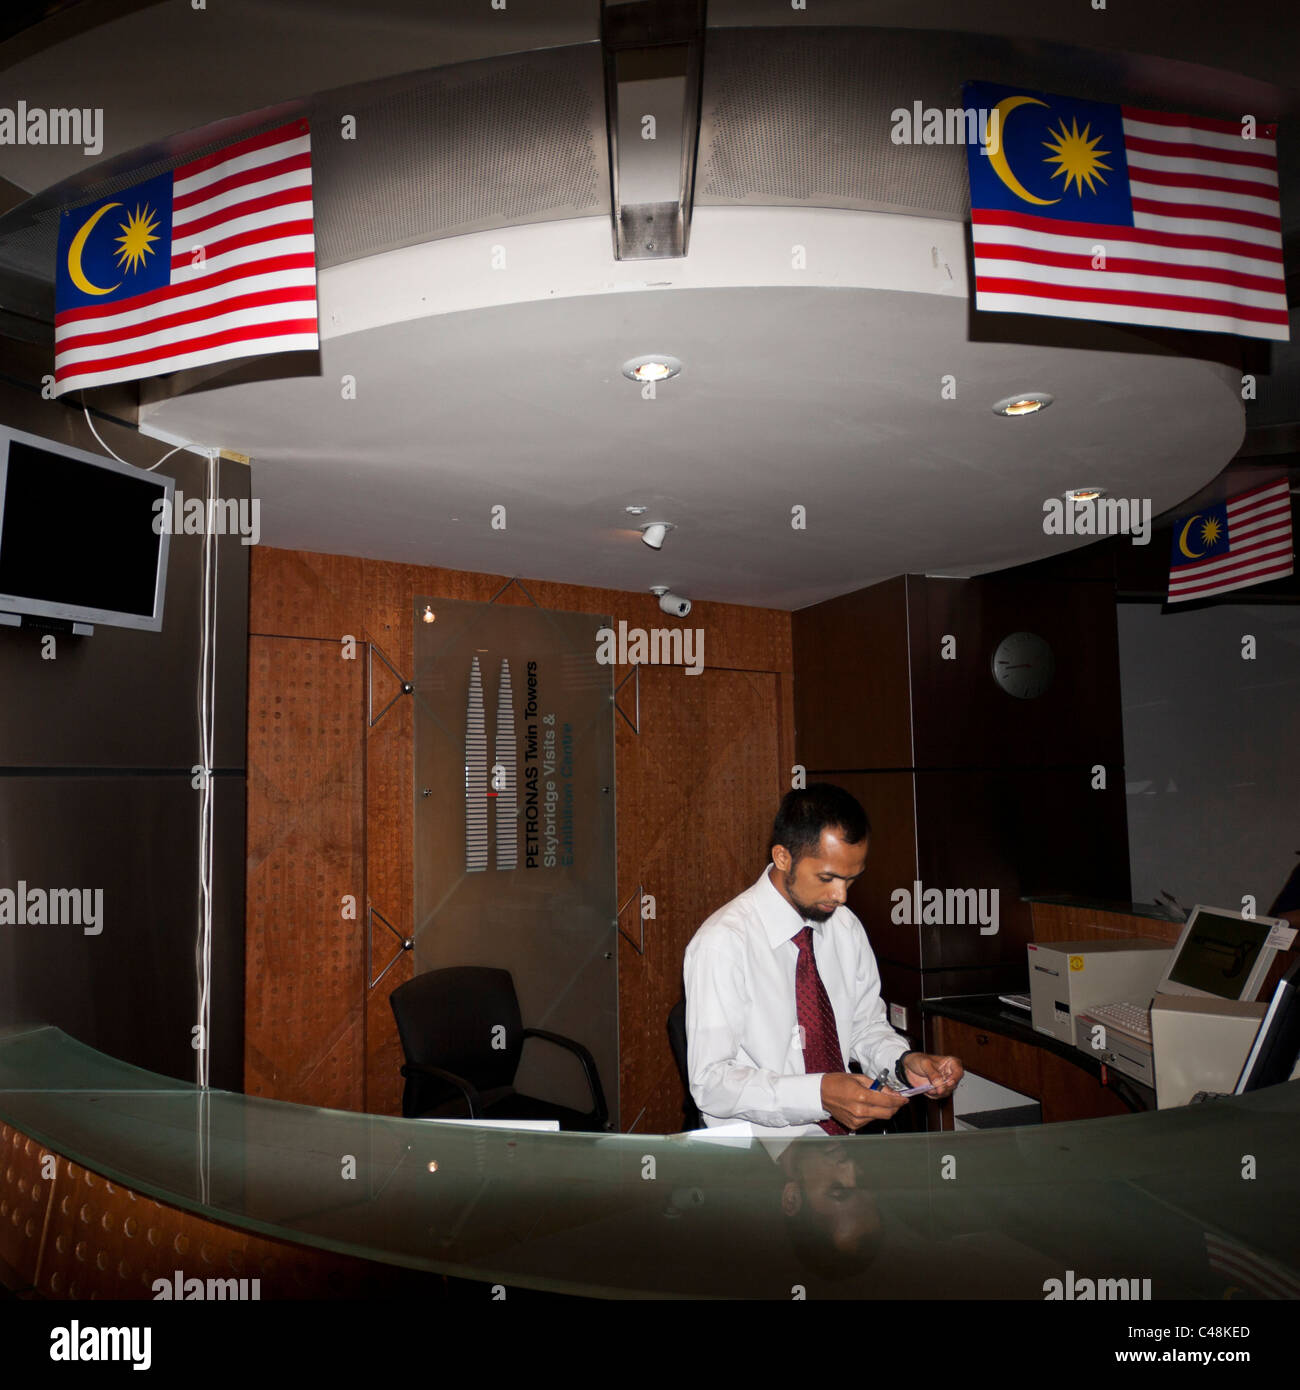 Particolare del banco di ricevimento in Torri Gemelle Petronas. Kuala Lumpur - Malaysia. Malaysia. La foto è stata scattata il 26 settembre 2010. Foto Stock